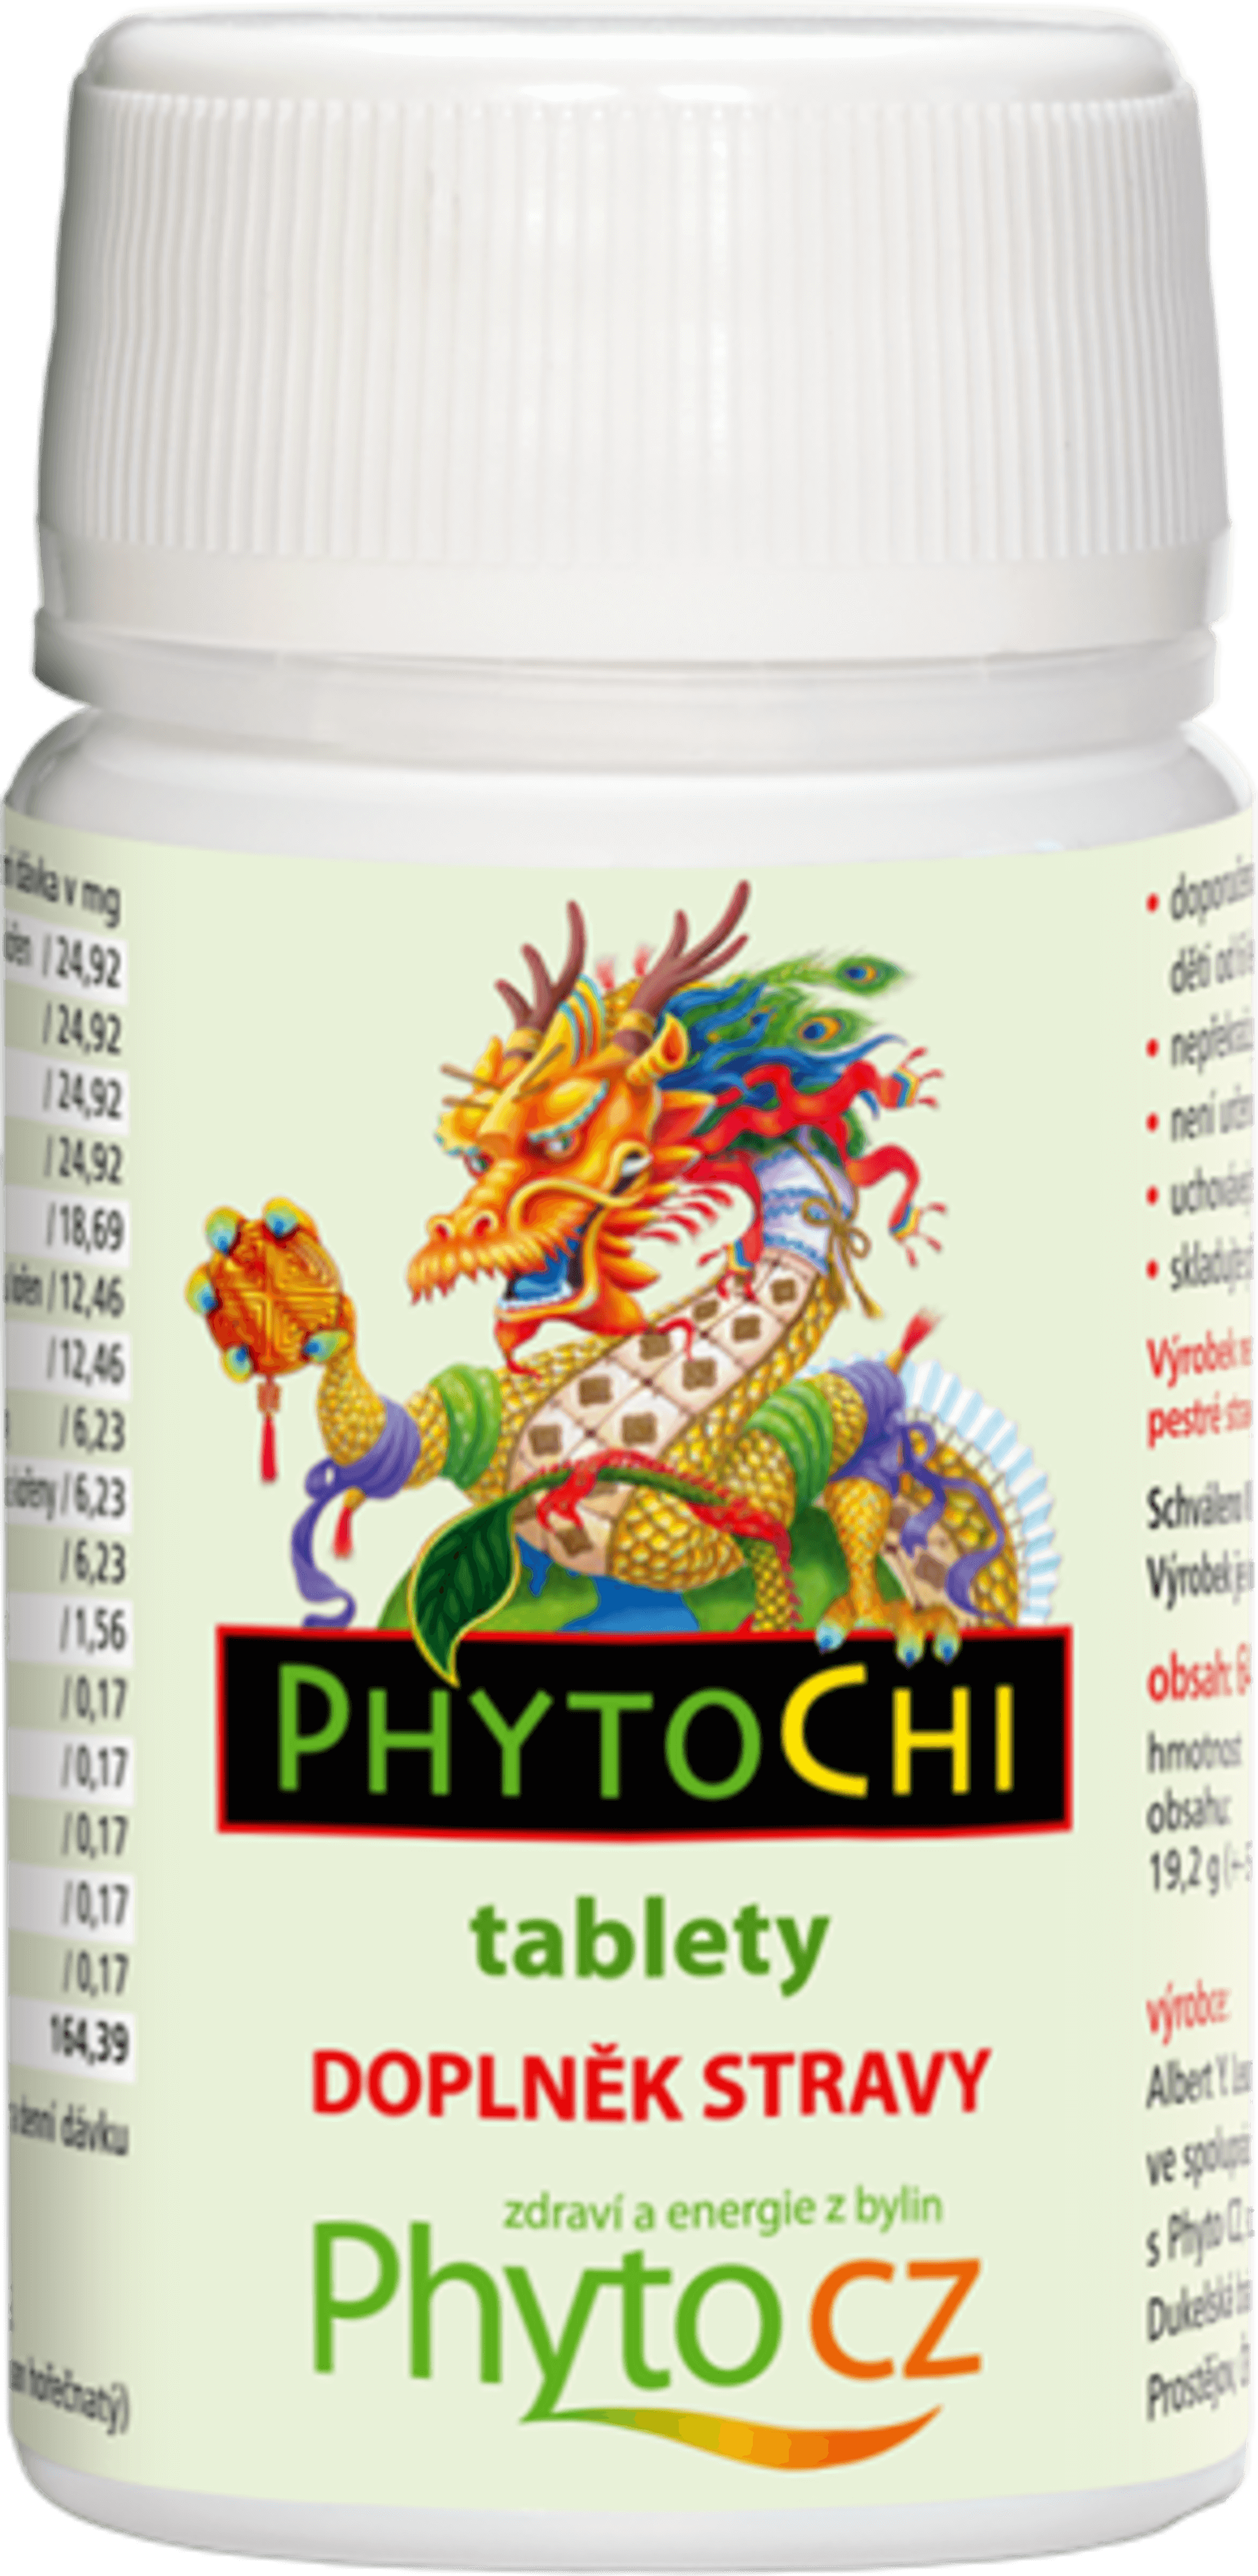 PhytoChi PhytoChi tablety (energie z bylin) 64 tablet